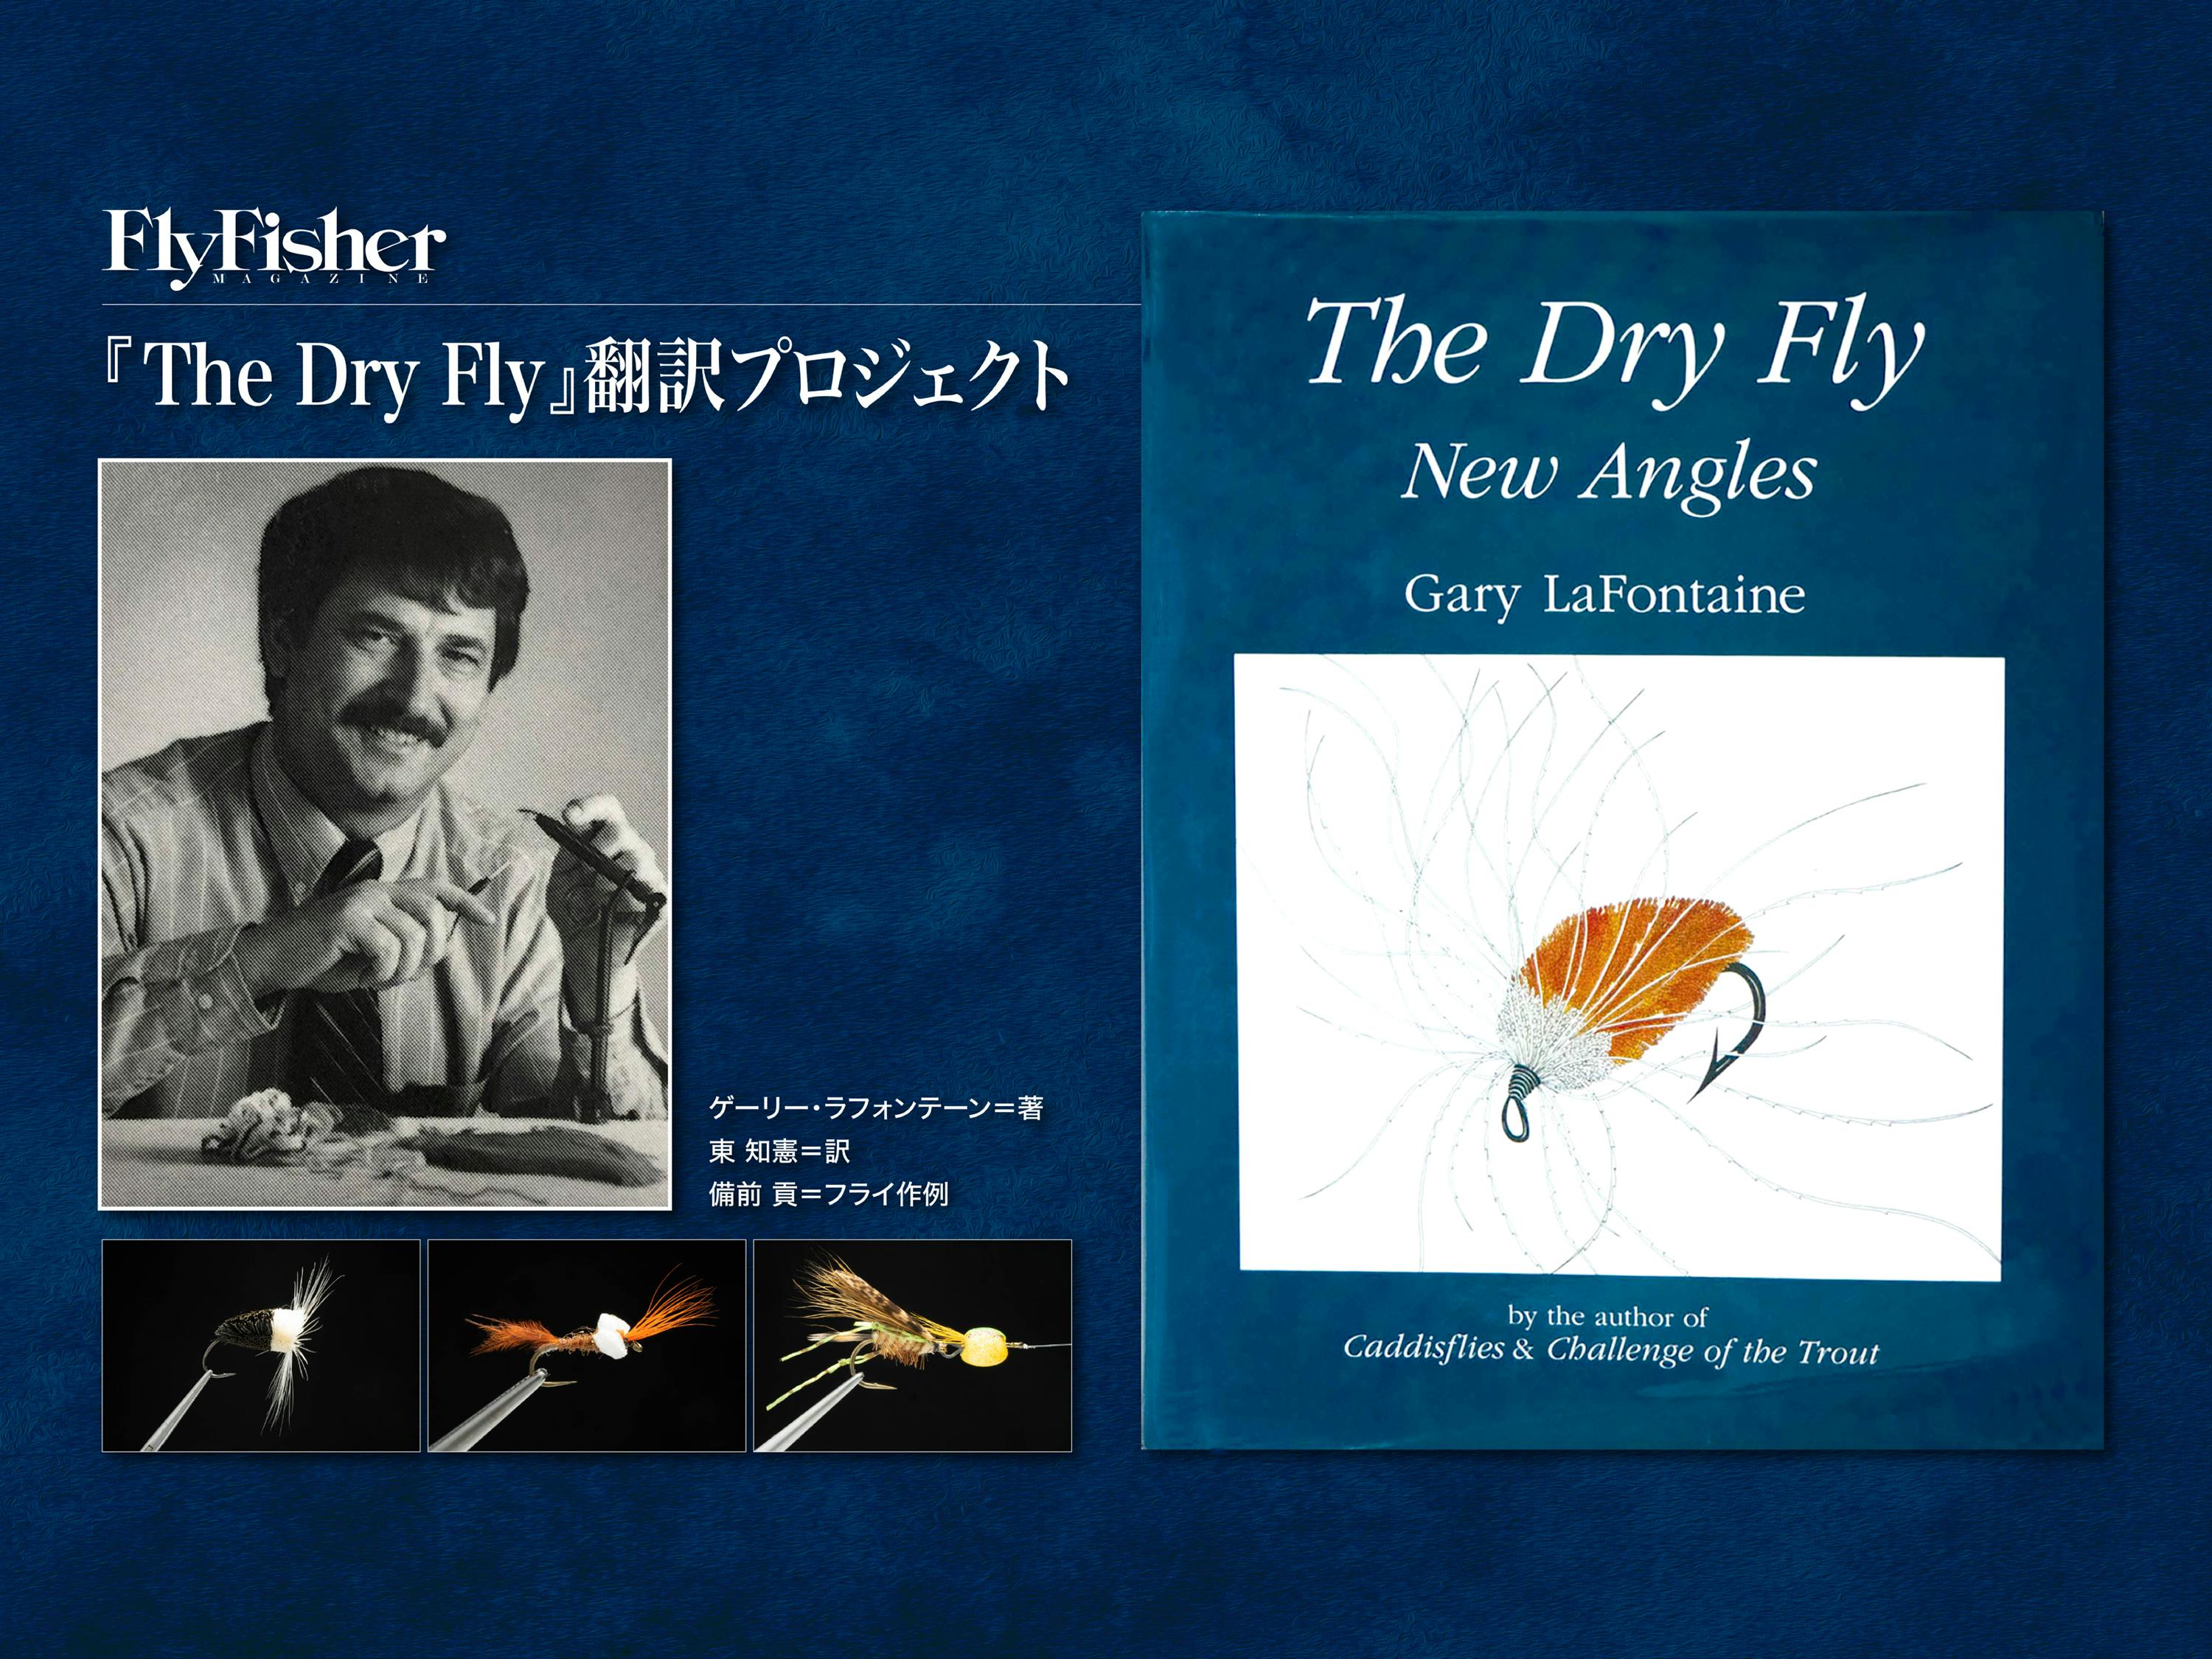 鬼才ゲーリー・ラフォンテーンの名著『The Dry Fly」翻訳プロジェクト CAMPFIRE (キャンプファイヤー)